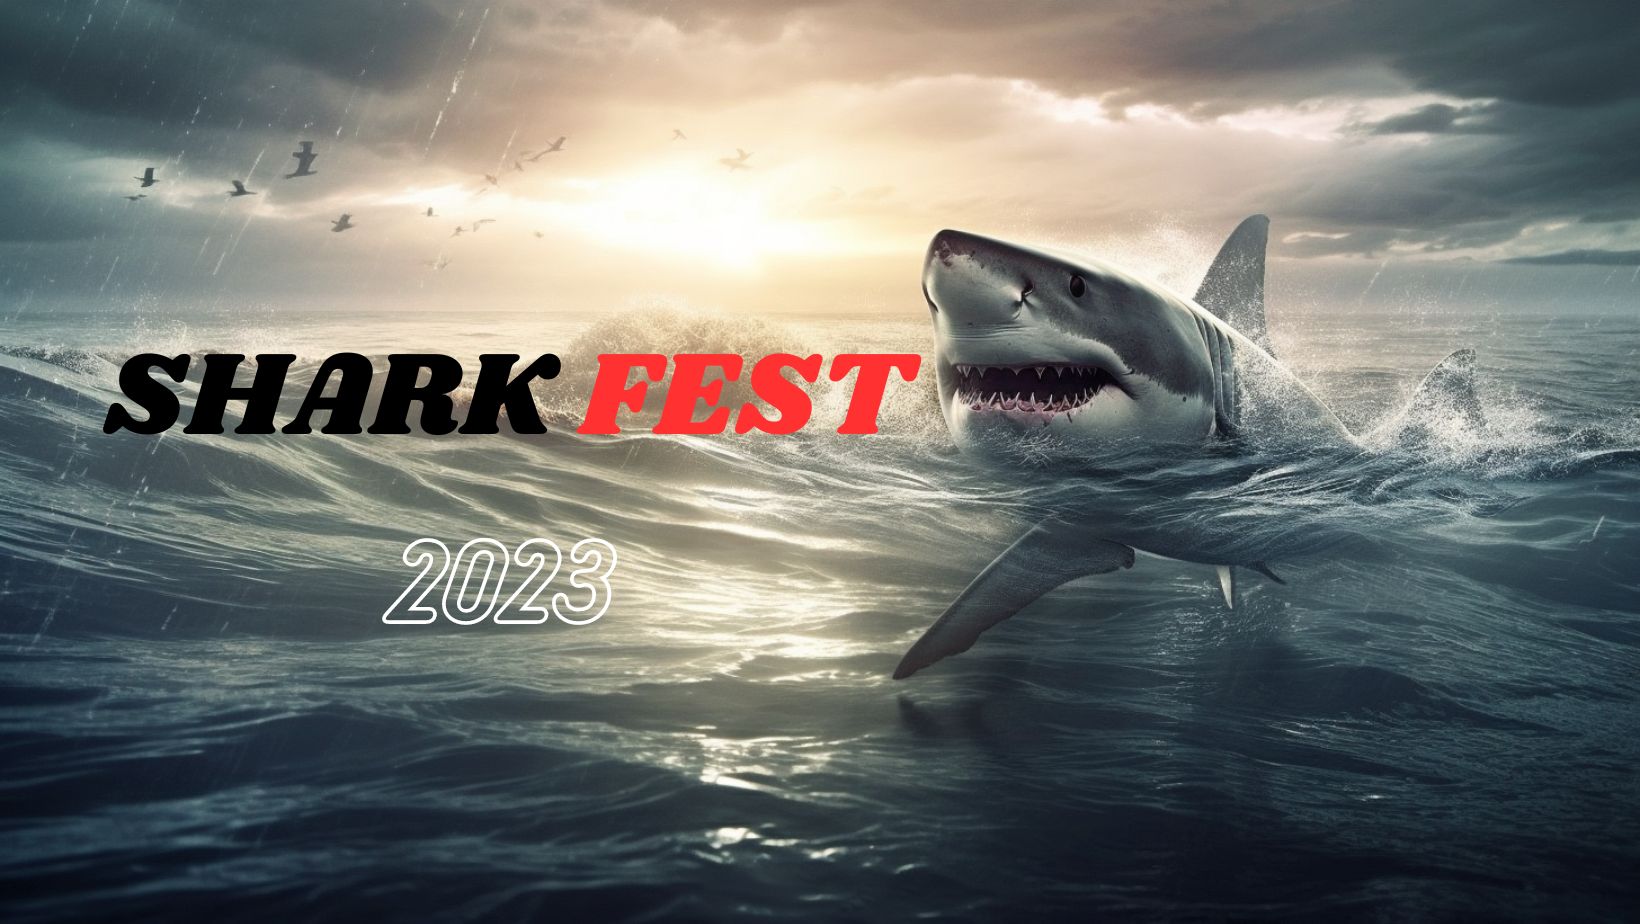 Shark Fest Countdown